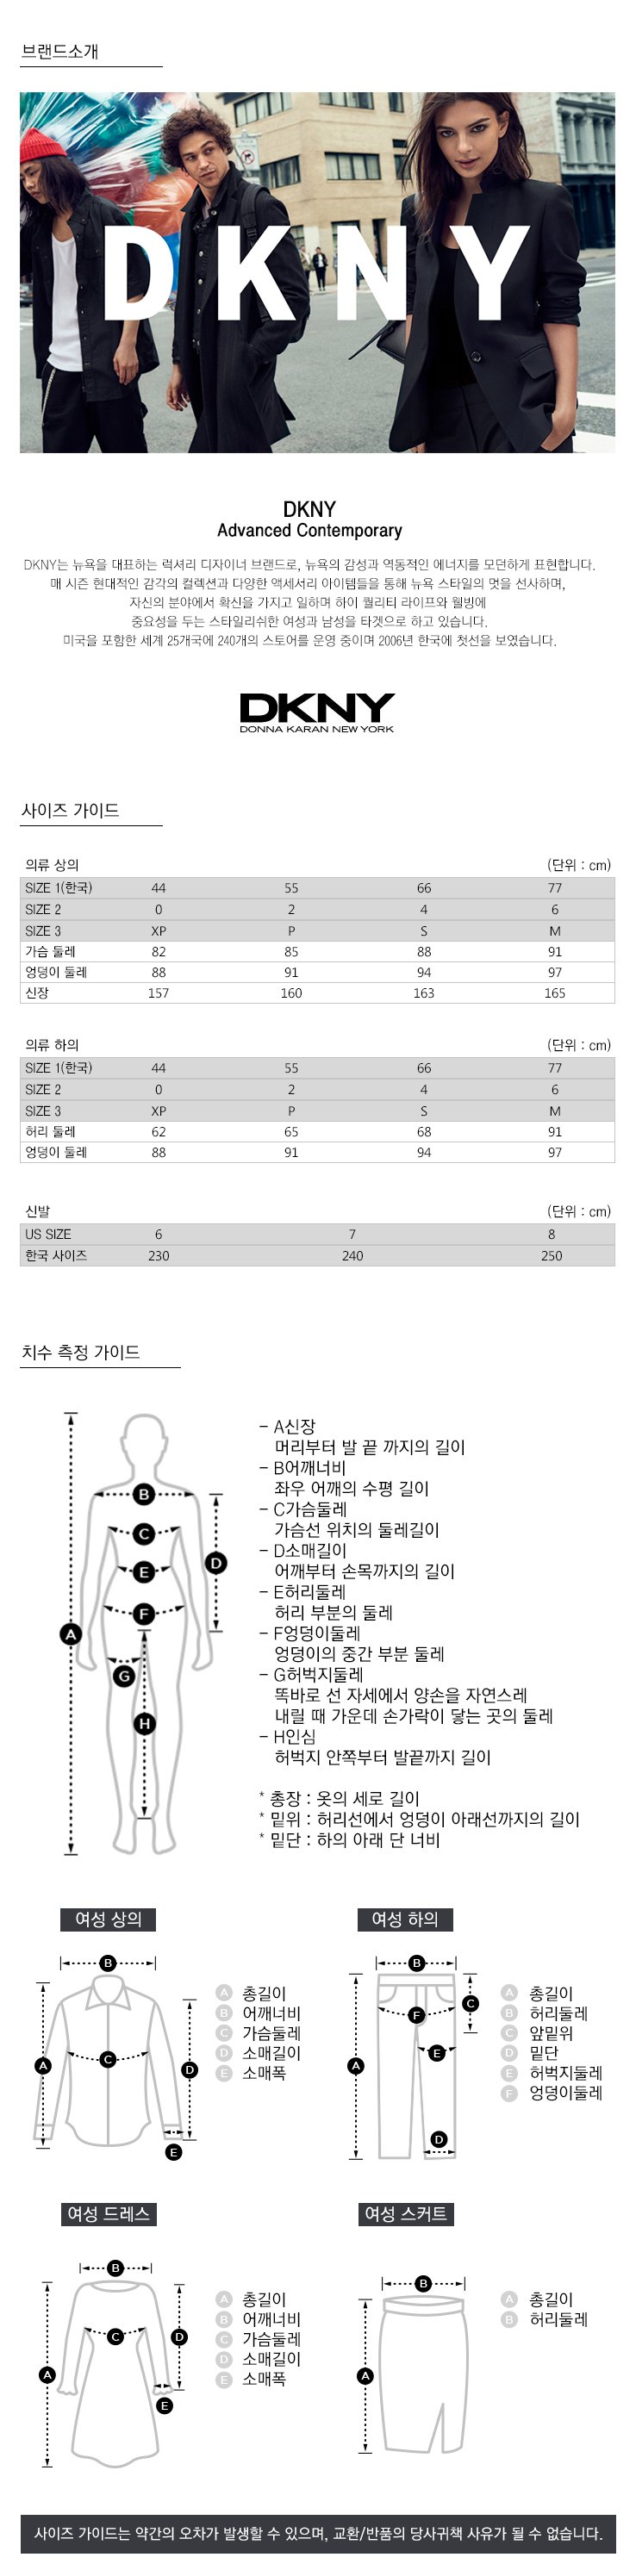 DKNY여성 브랜드 소개 및 사이즈 조견표